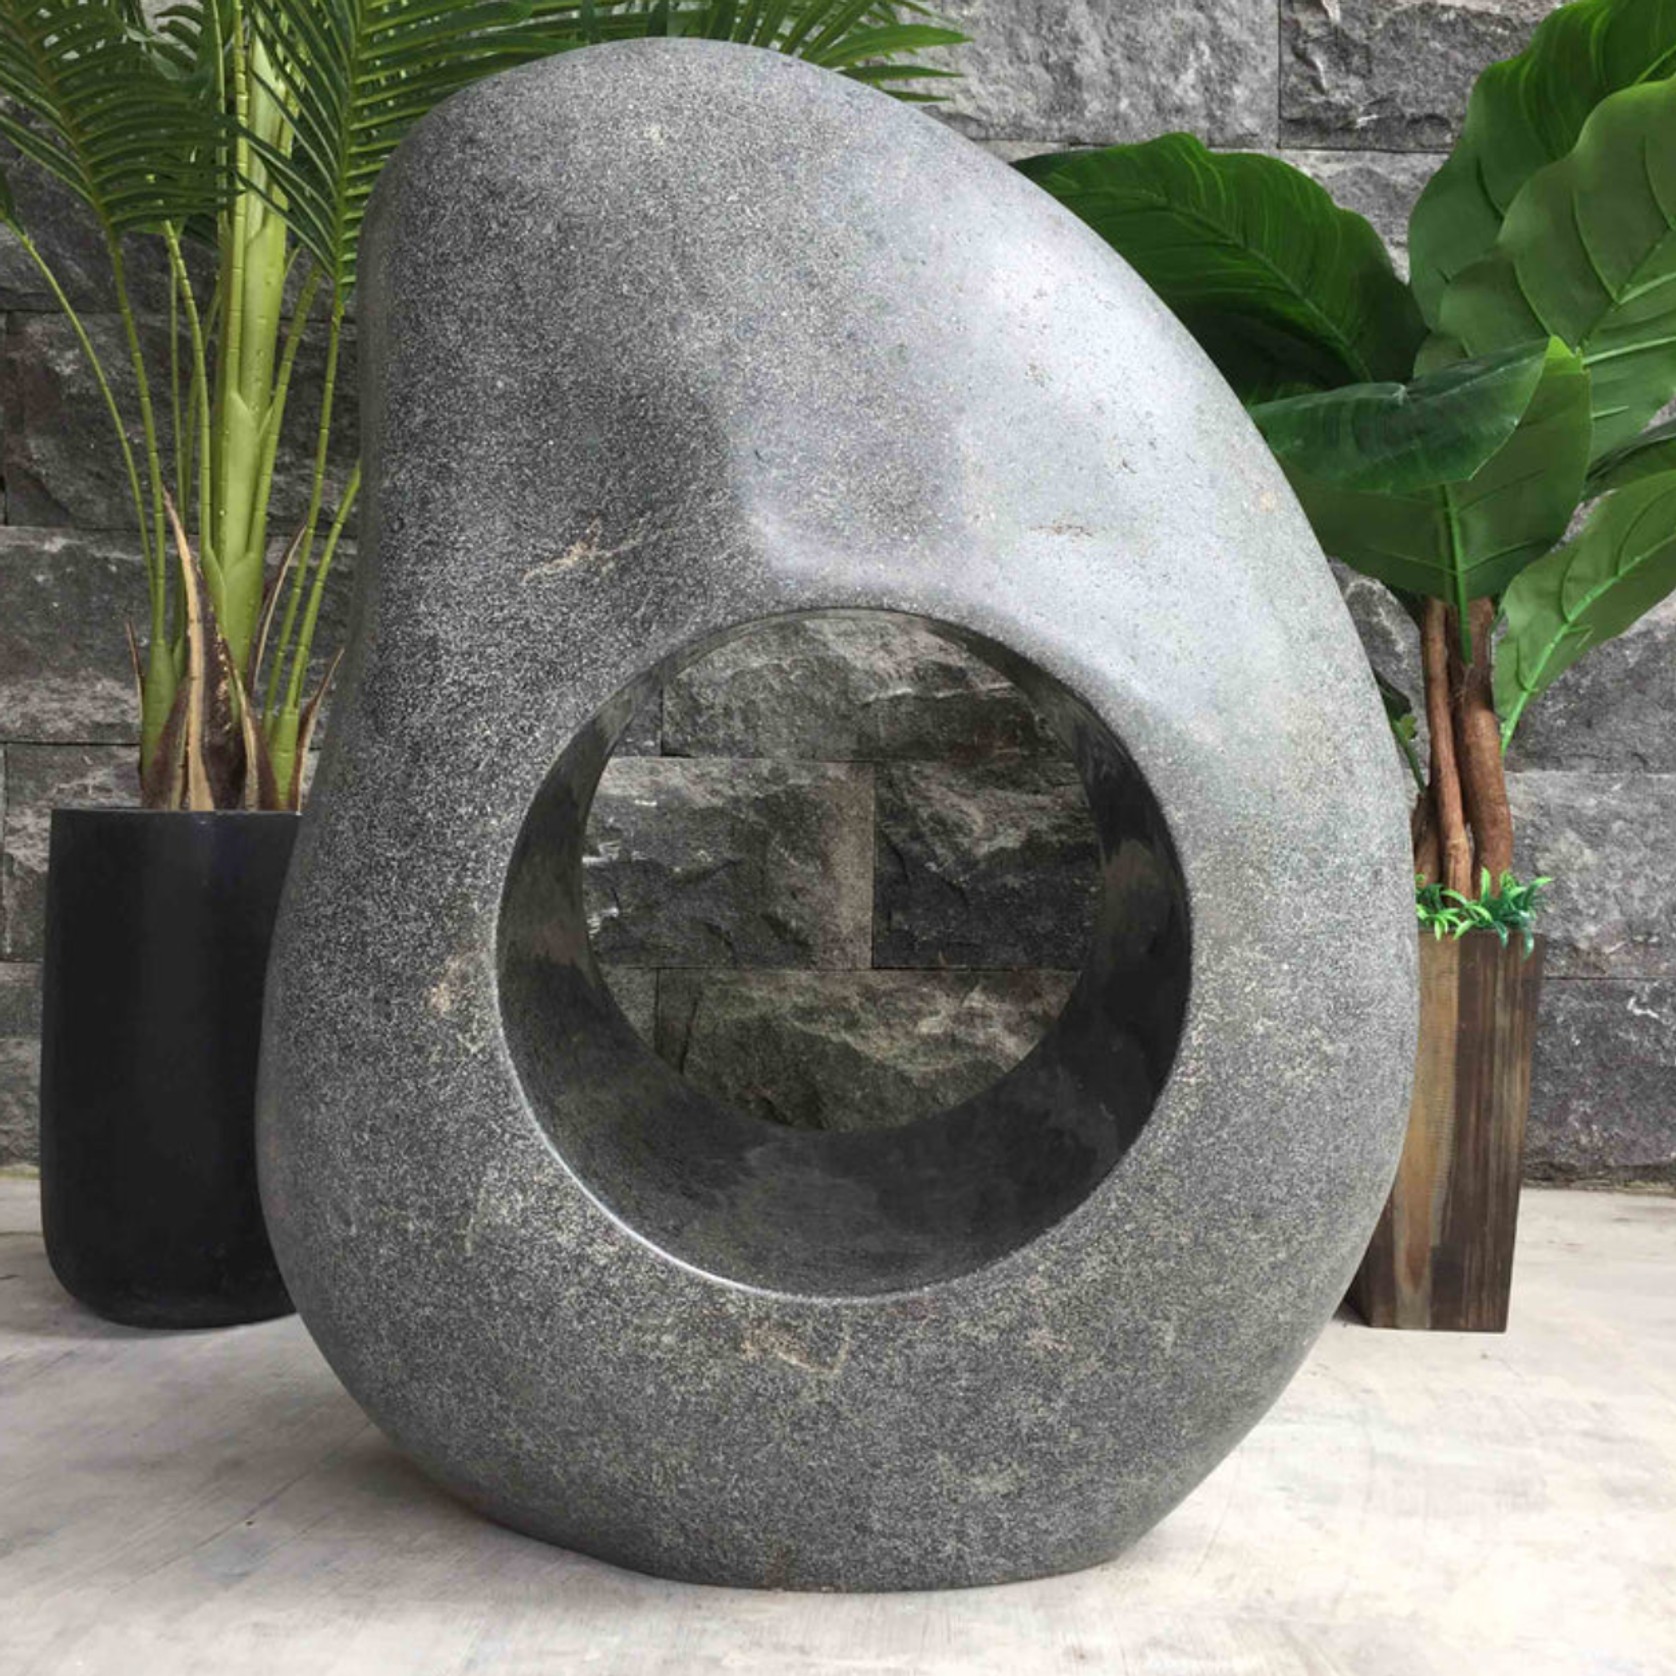 Garden Stone Sculpture gallery detail image